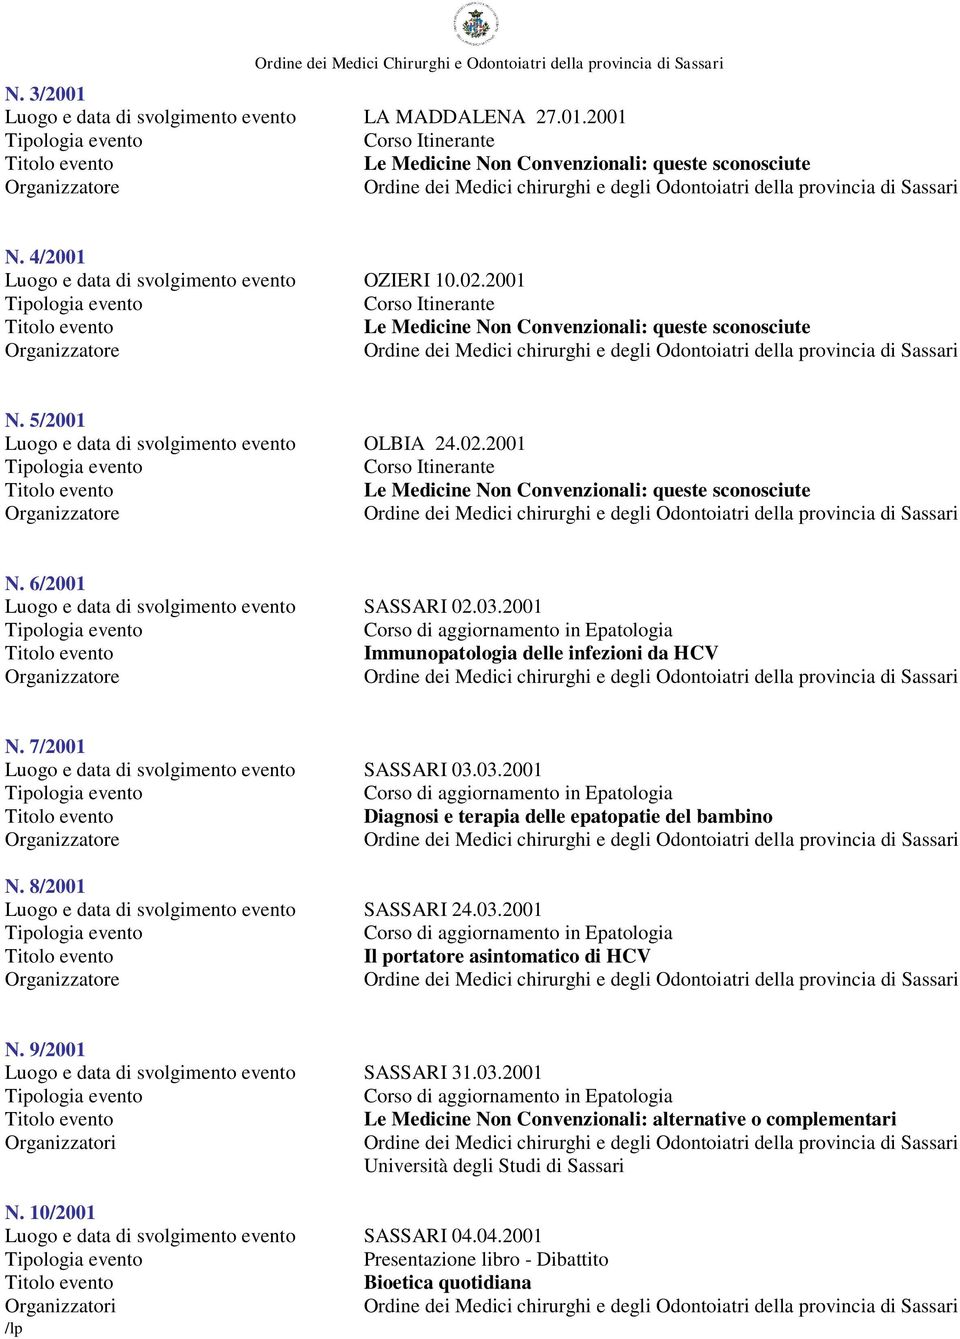 2001 Corso Itinerante Le Medicine Non Convenzionali: queste sconosciute N. 6/2001 Luogo e data di svolgimento evento SASSARI 02.03.